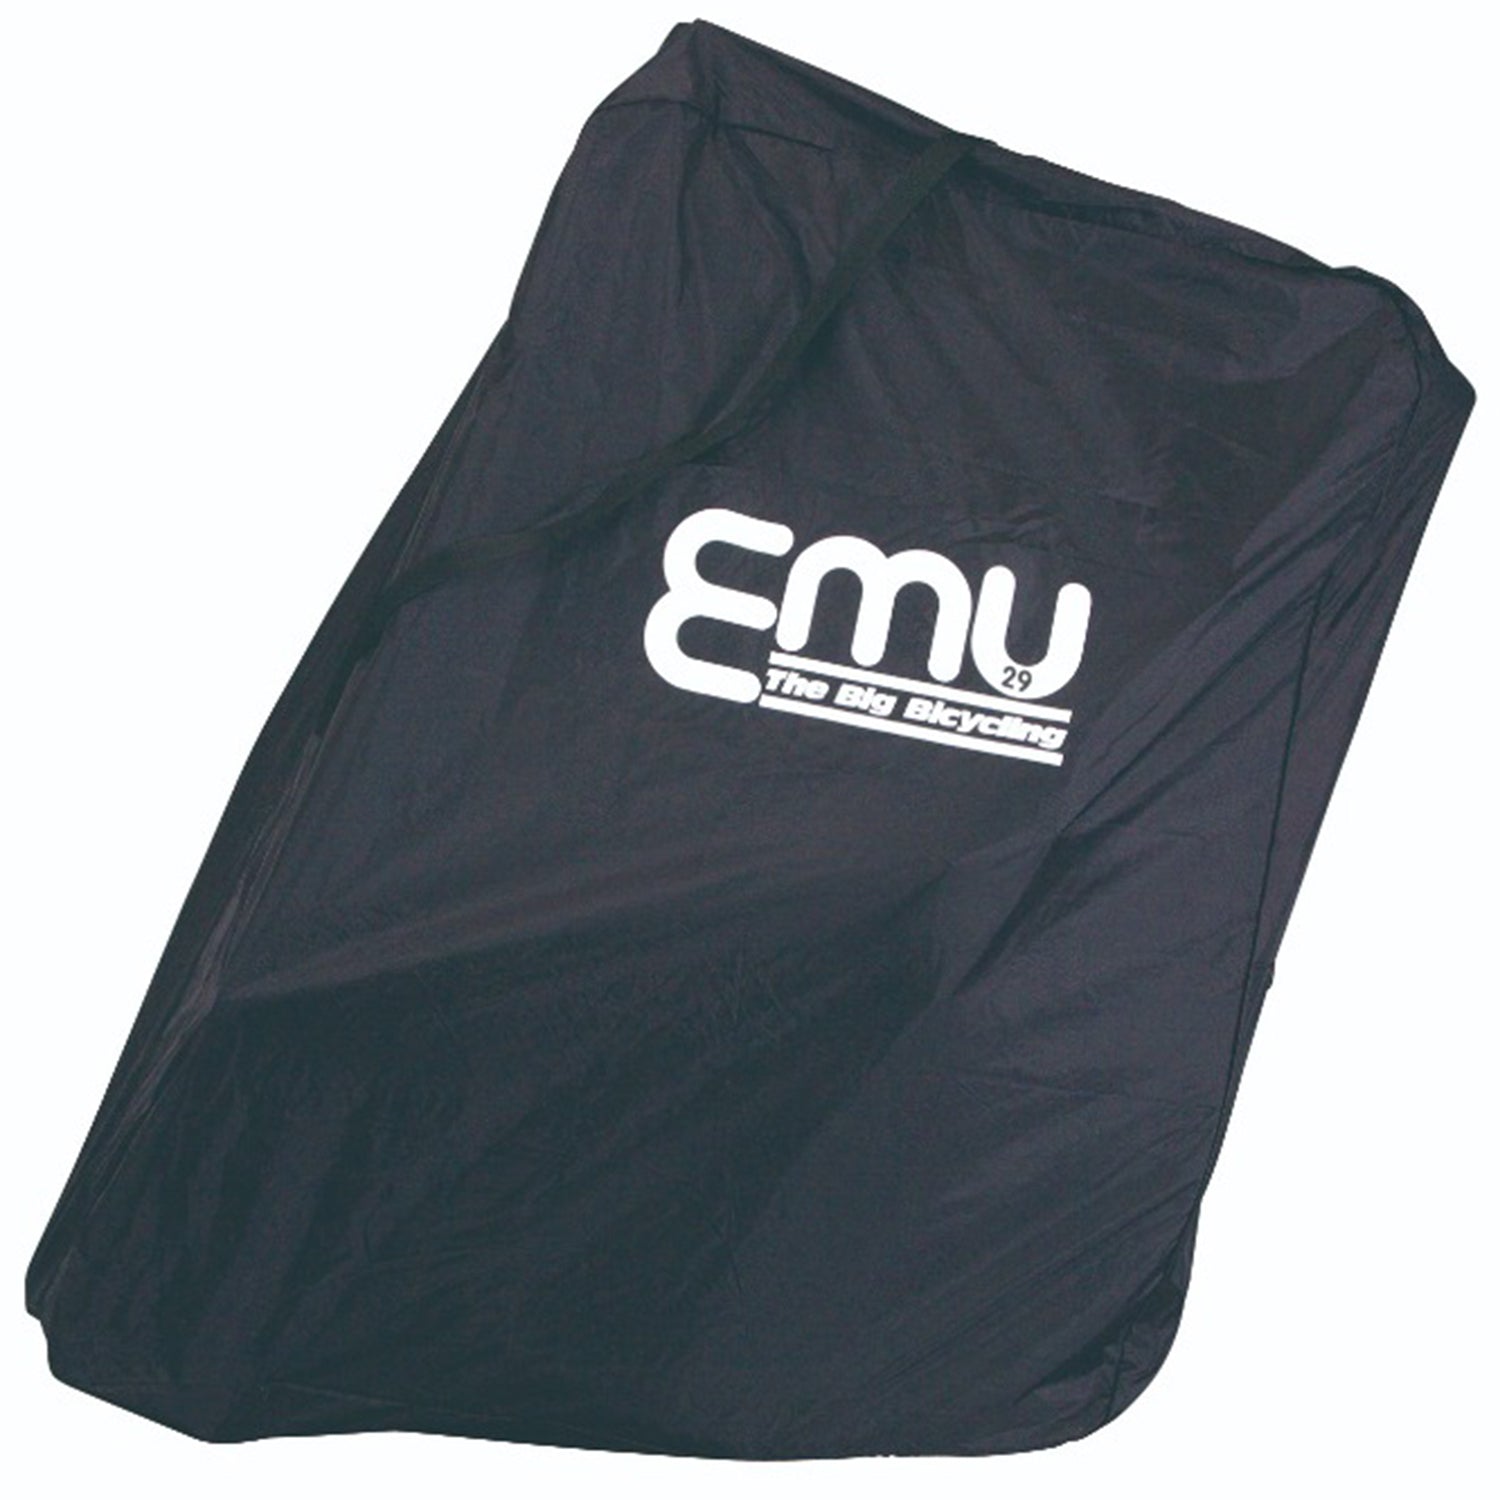 OSTRICH Emu / E-11 wheeled bag